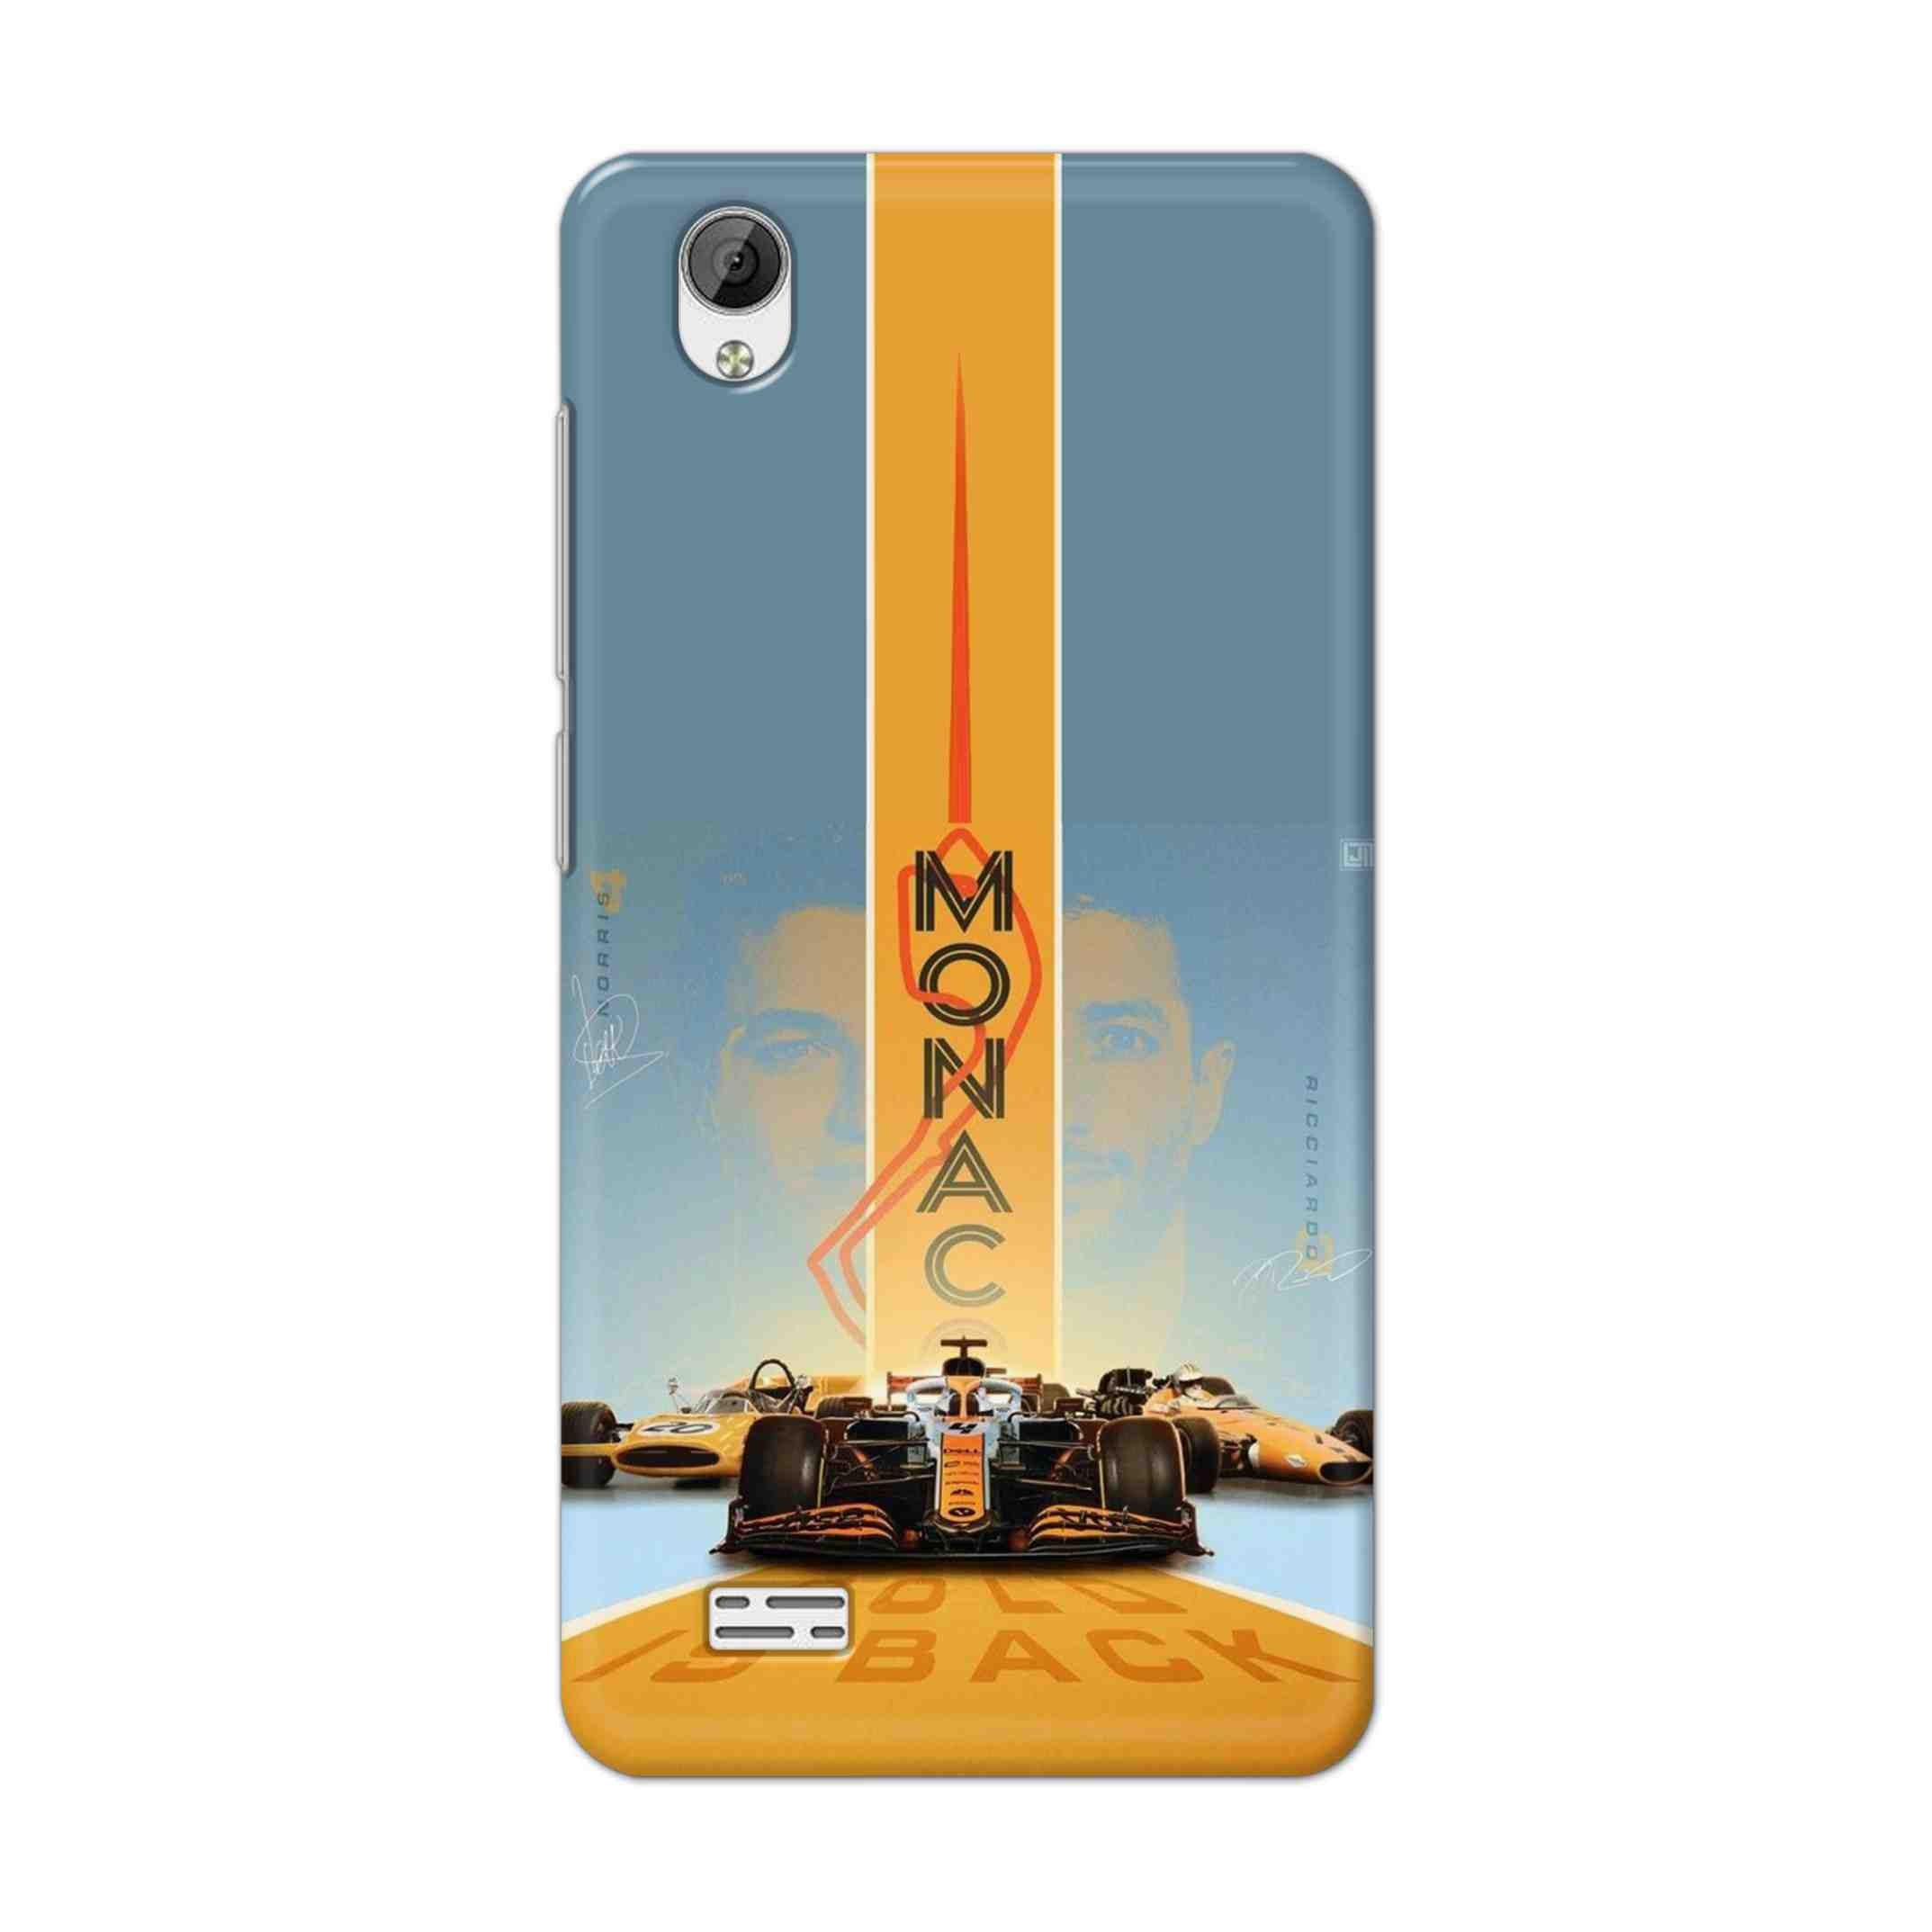 Buy Monac Formula Hard Back Mobile Phone Case Cover For Vivo Y31 Online